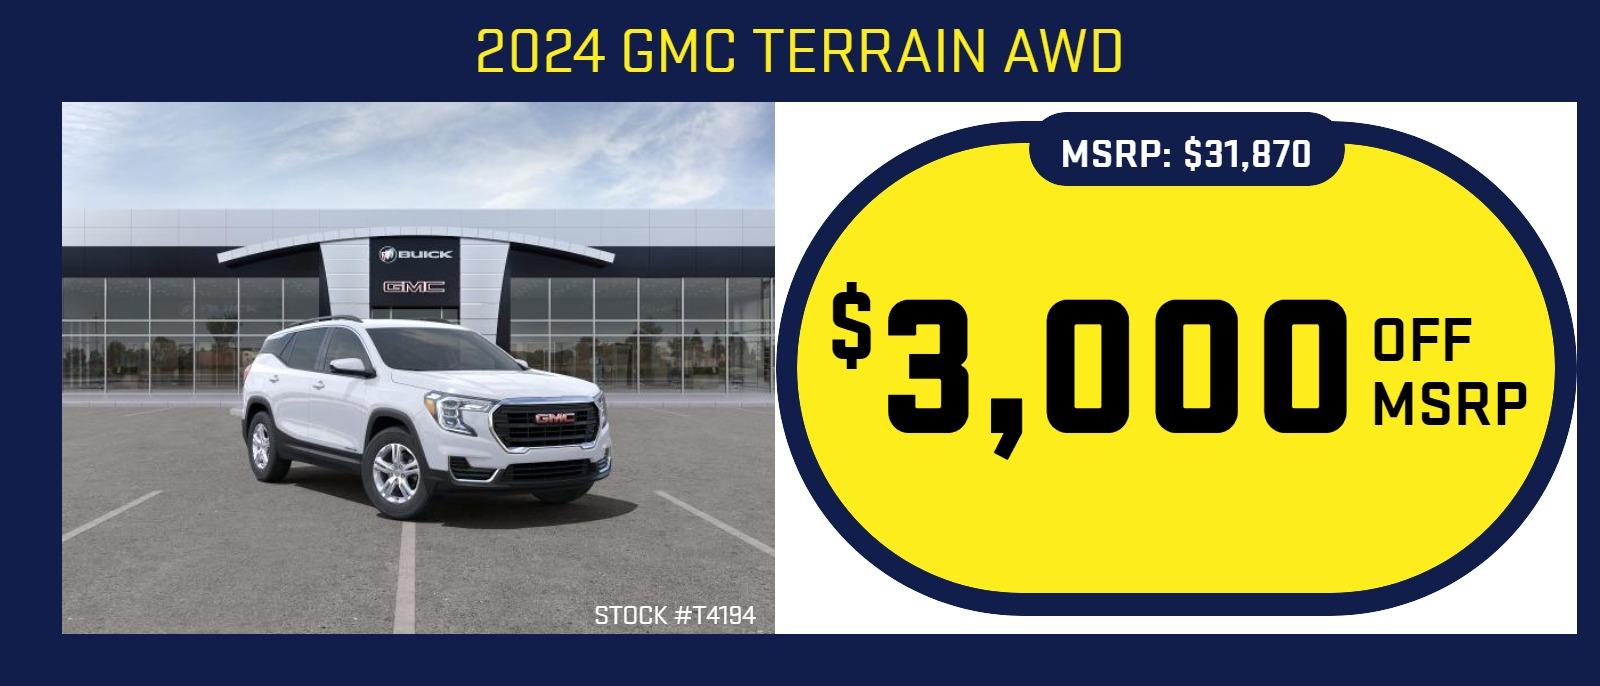 2024 GMC Terrain
Stock  #T4147

MSRP: $34,860
$3,000 OFF MSRP!